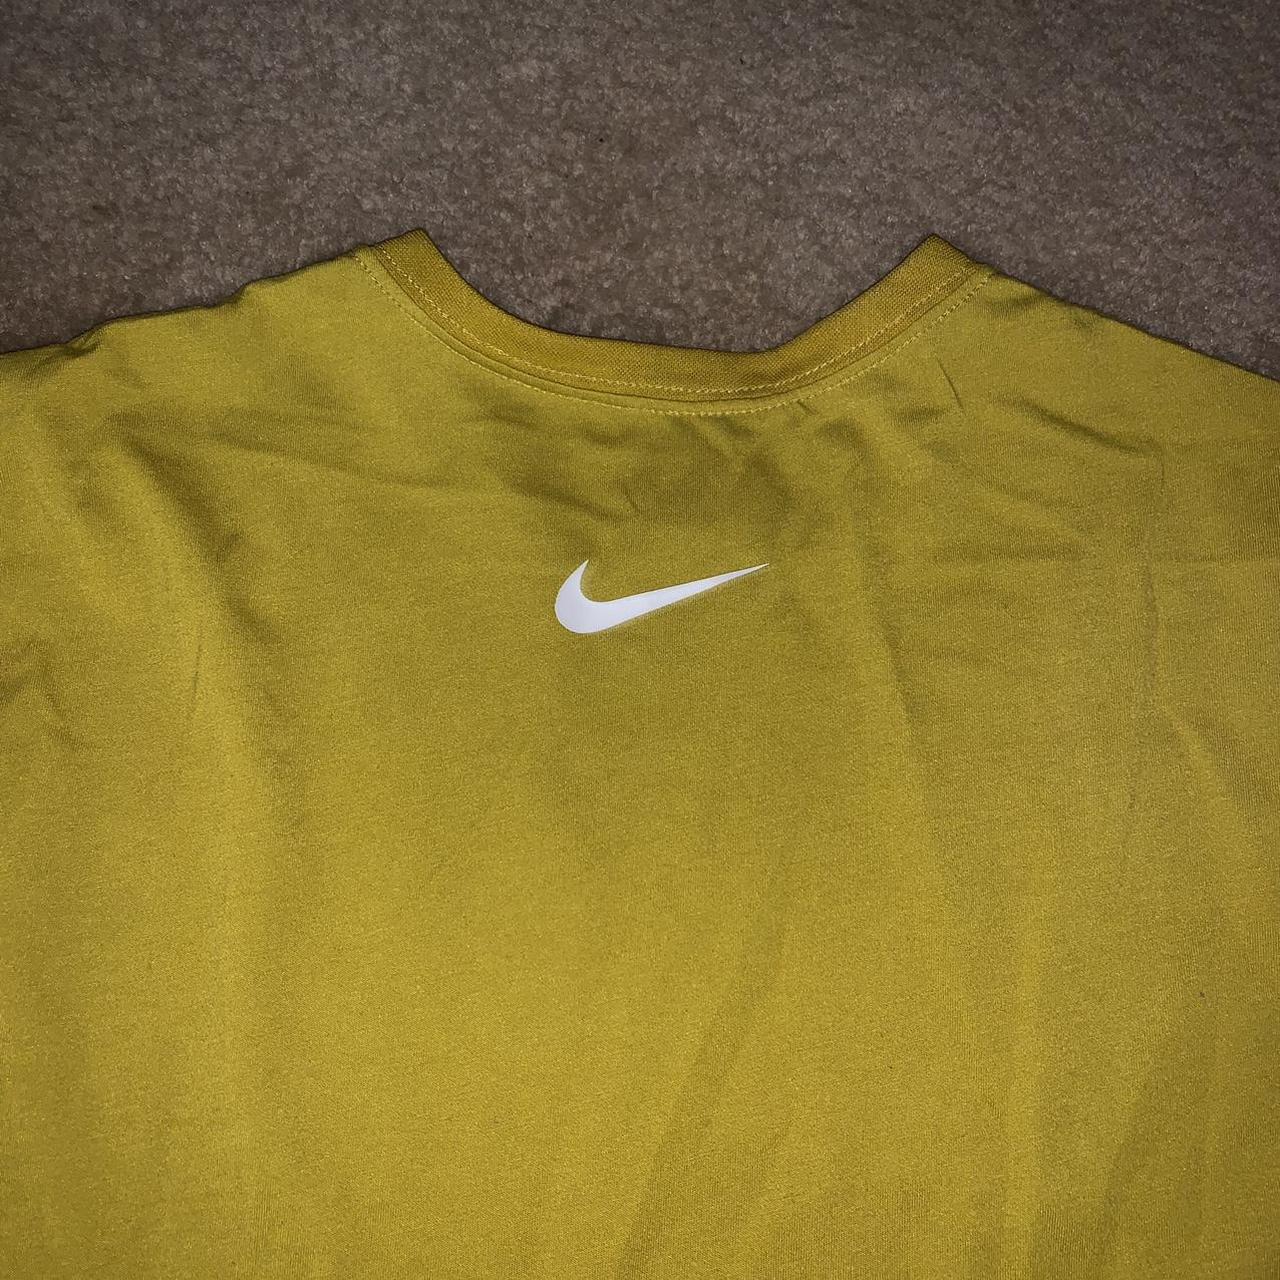 Product Image 3 - Nike Dri-Fit Training Shirt

• size